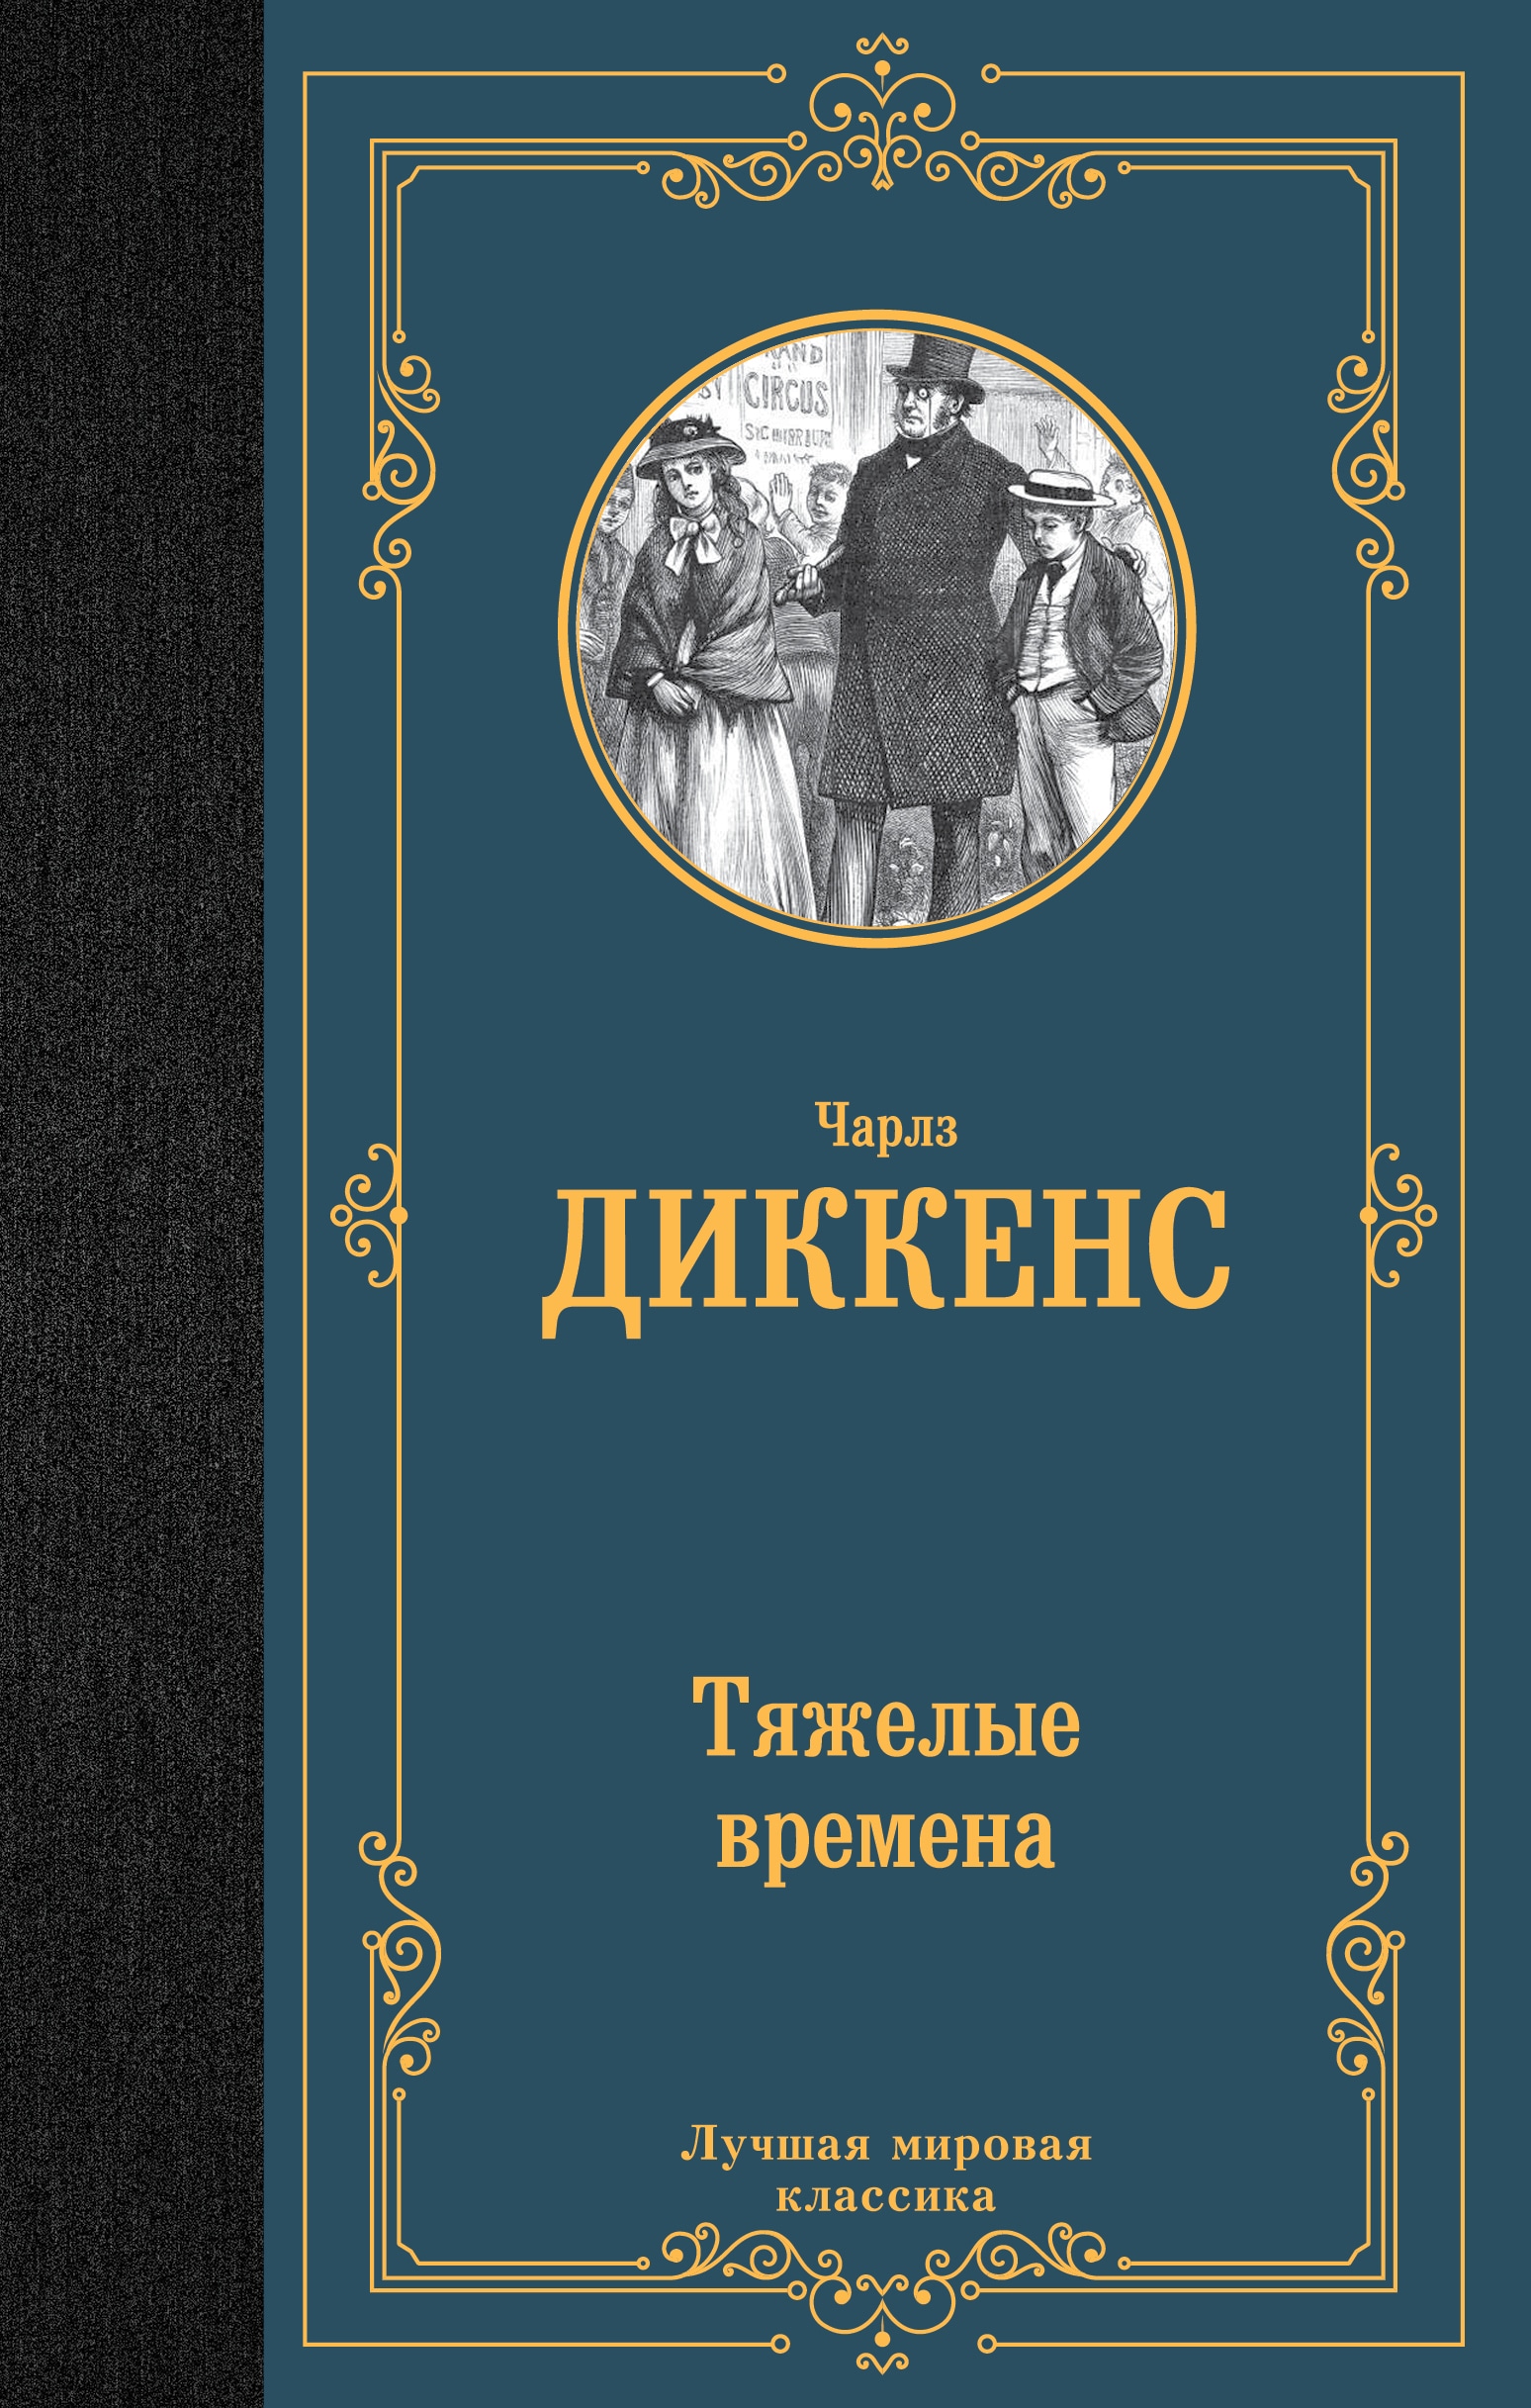 Book “Тяжелые времена” by Чарльз Диккенс — 2022